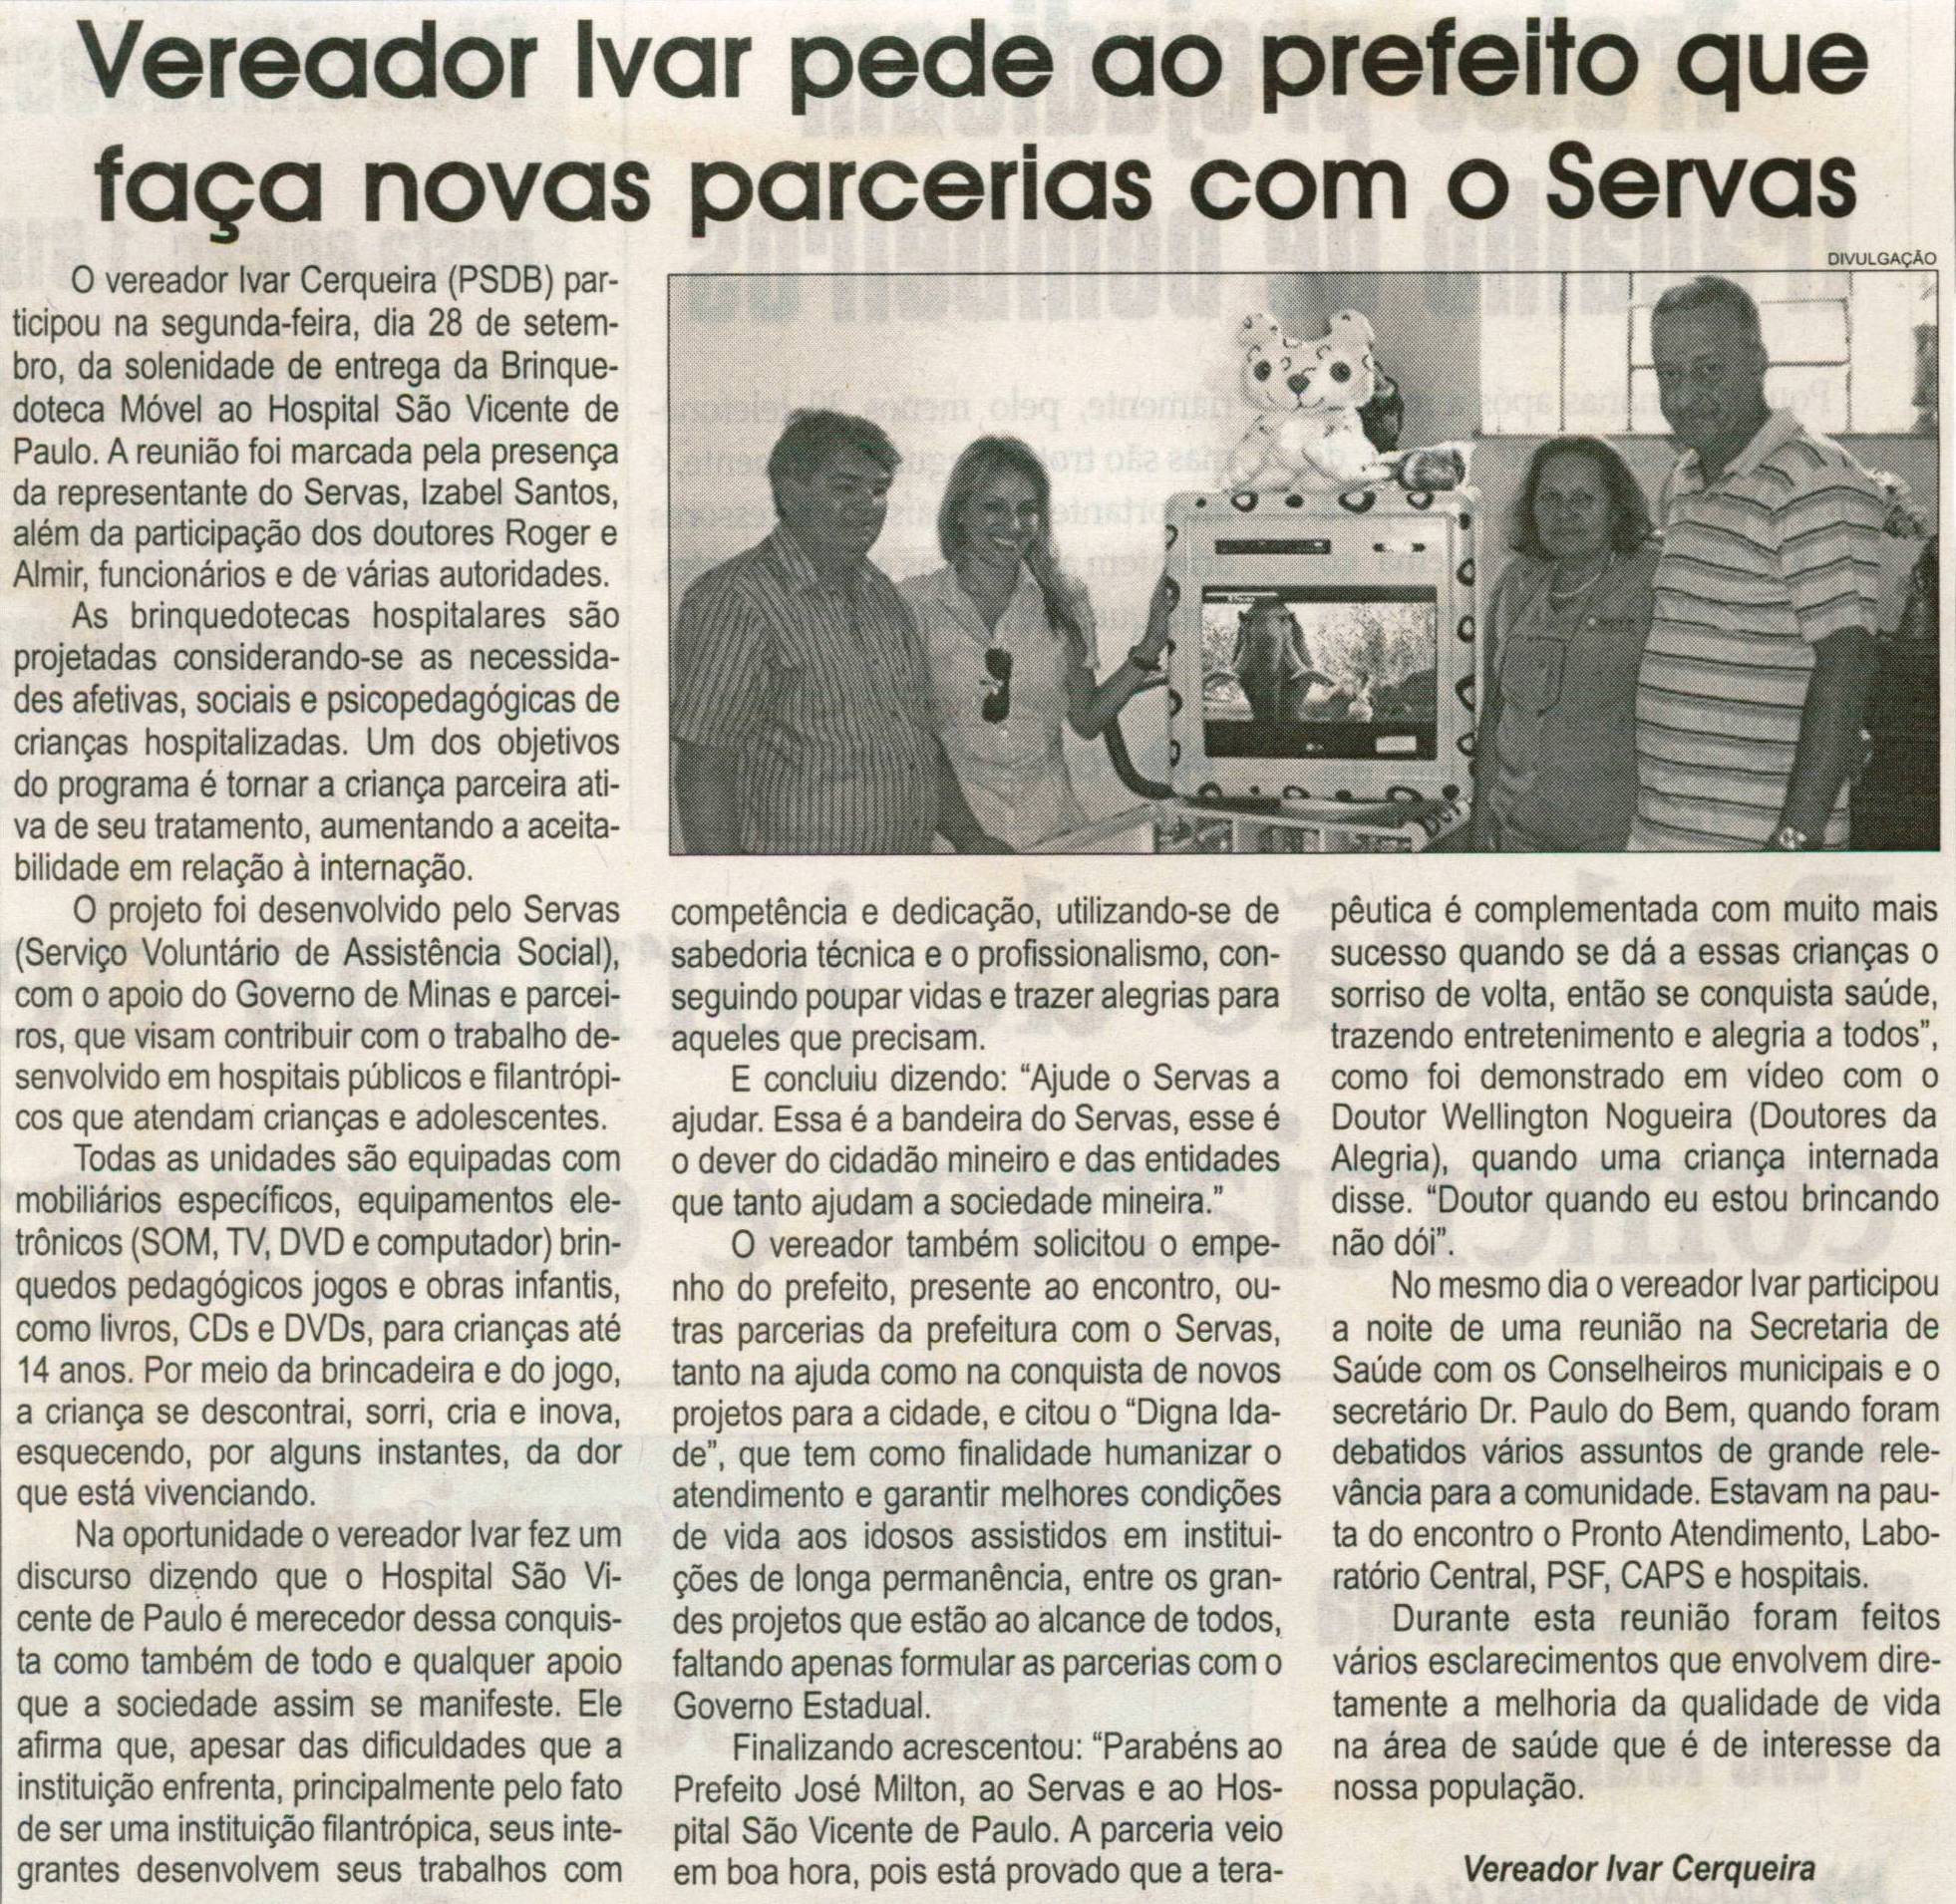 Vereador Ivar pede ao prefeito que faça novas parcerias com o Servas. Jornal Correio da Cidade, 17 out. 2009, p. 02.